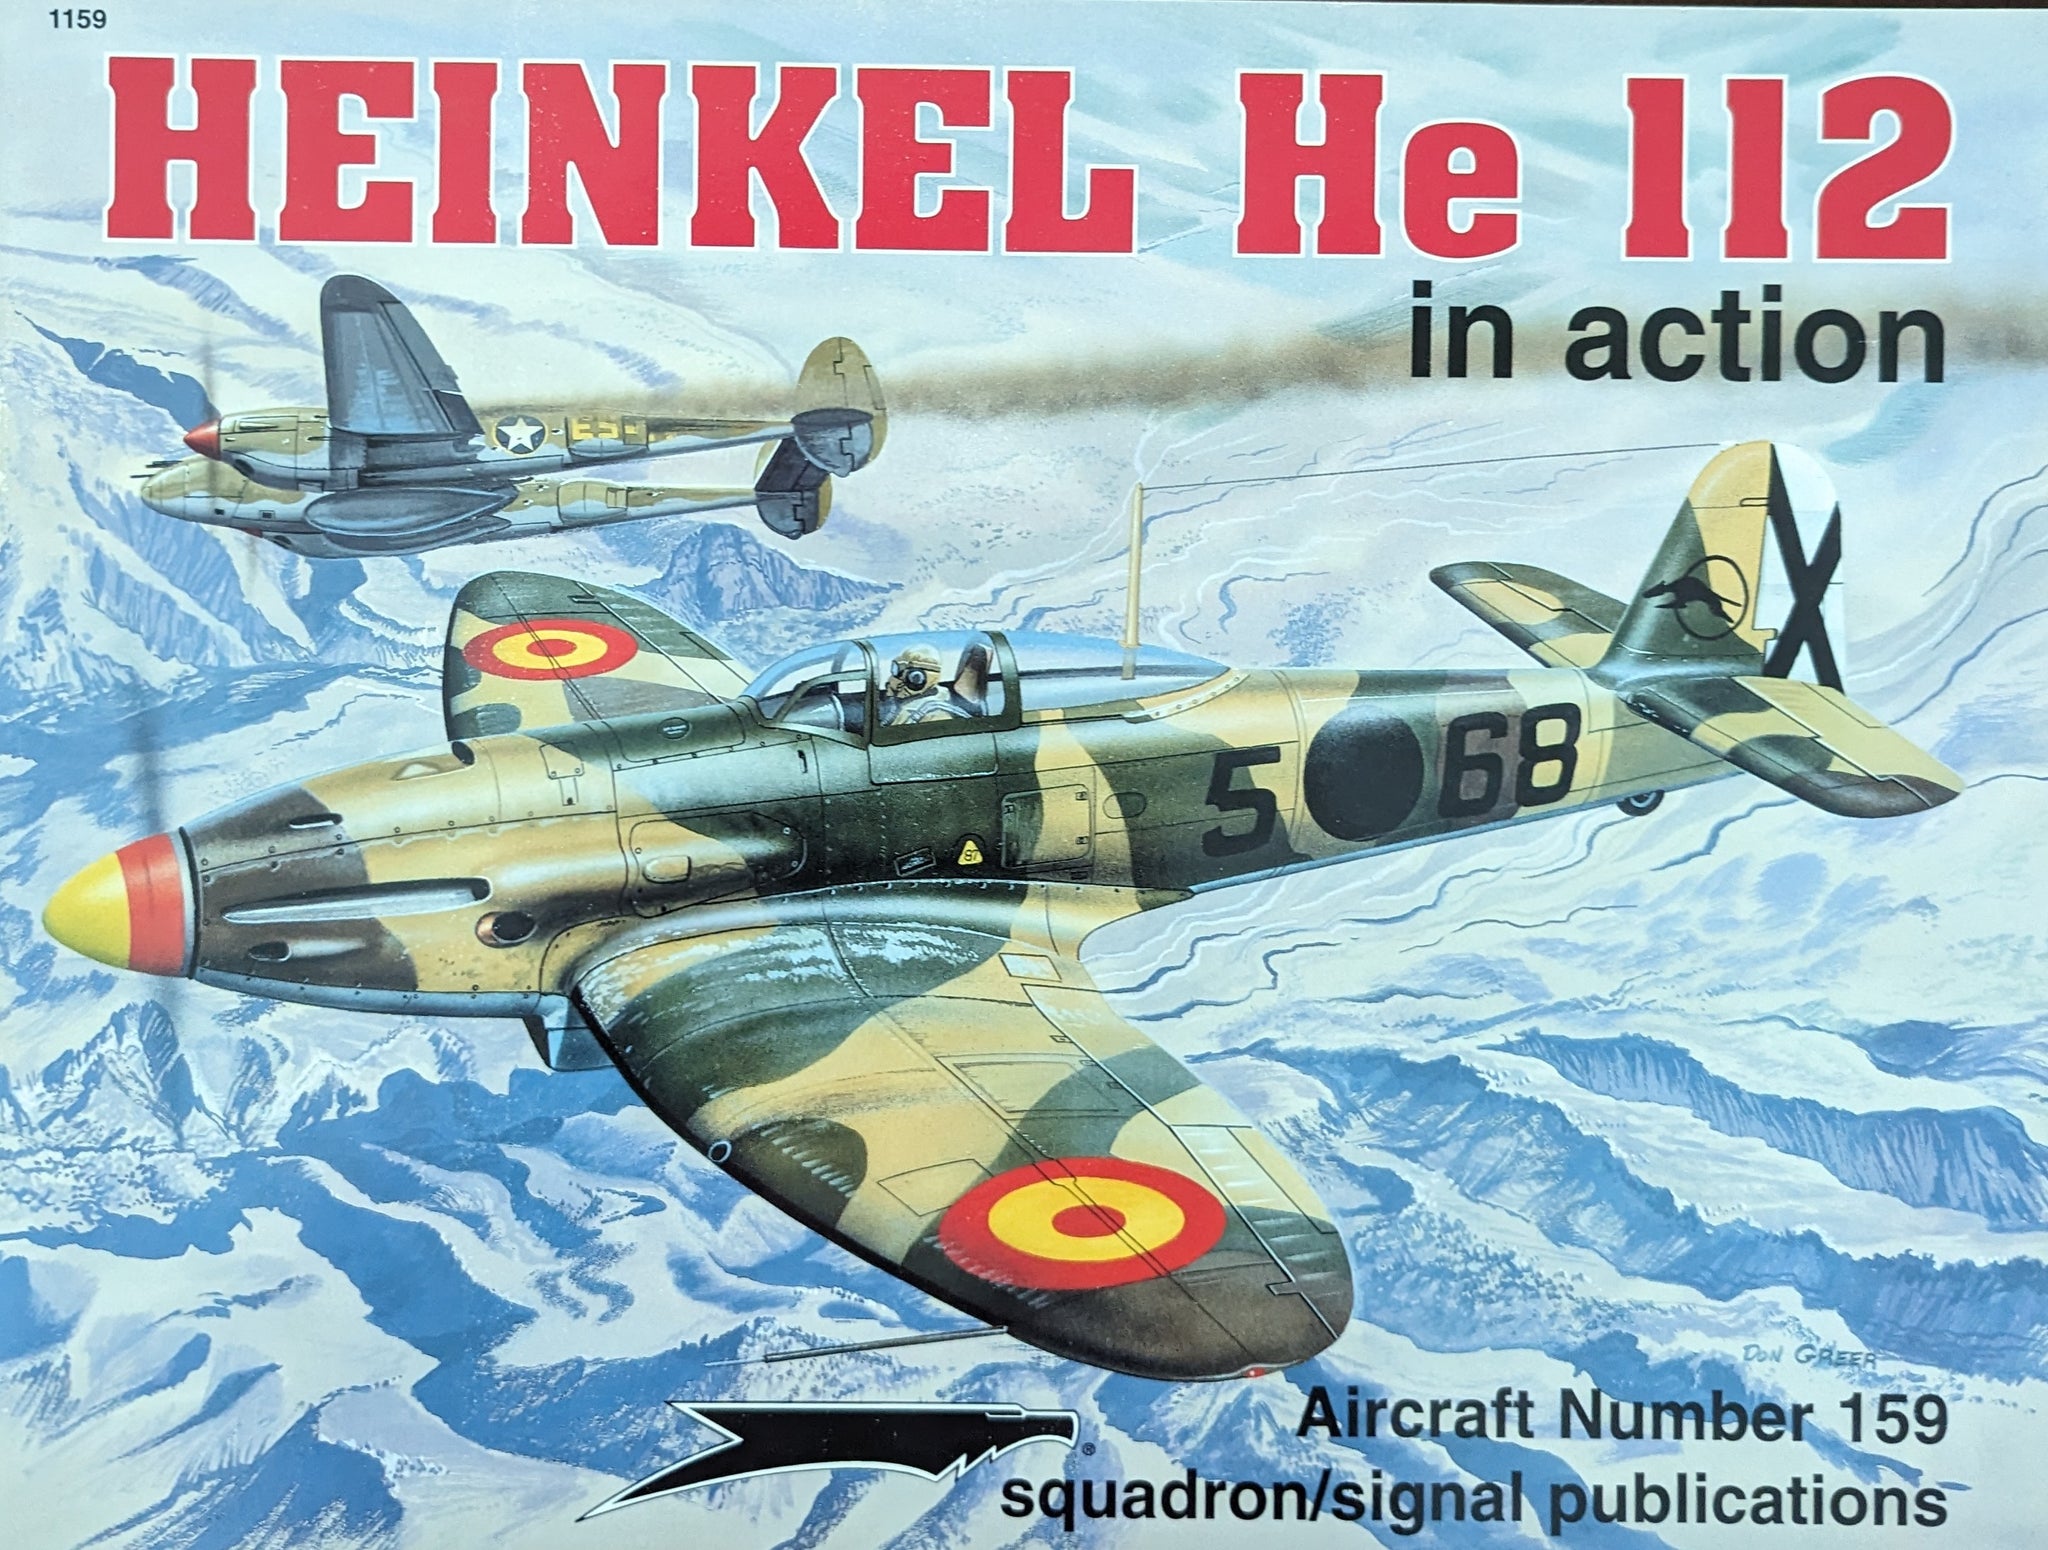 HEINKEL He 112 in action